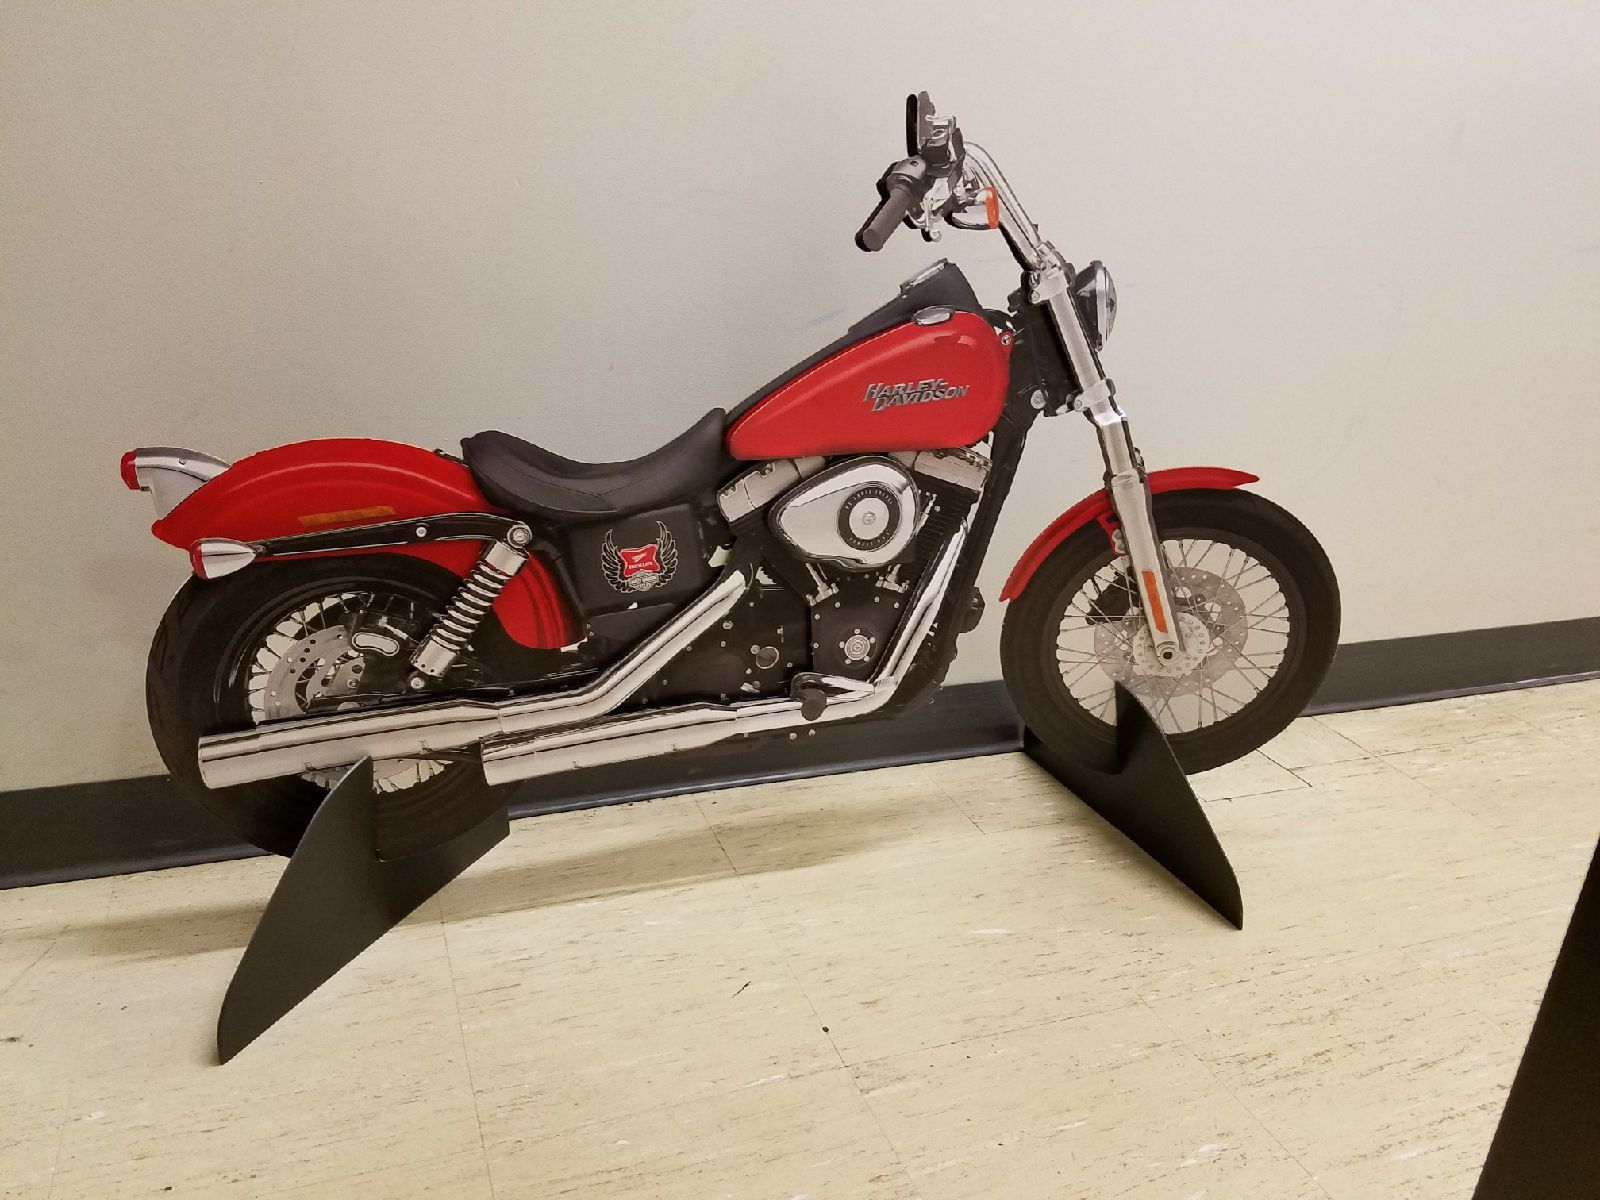 Harley-Davidson cutout